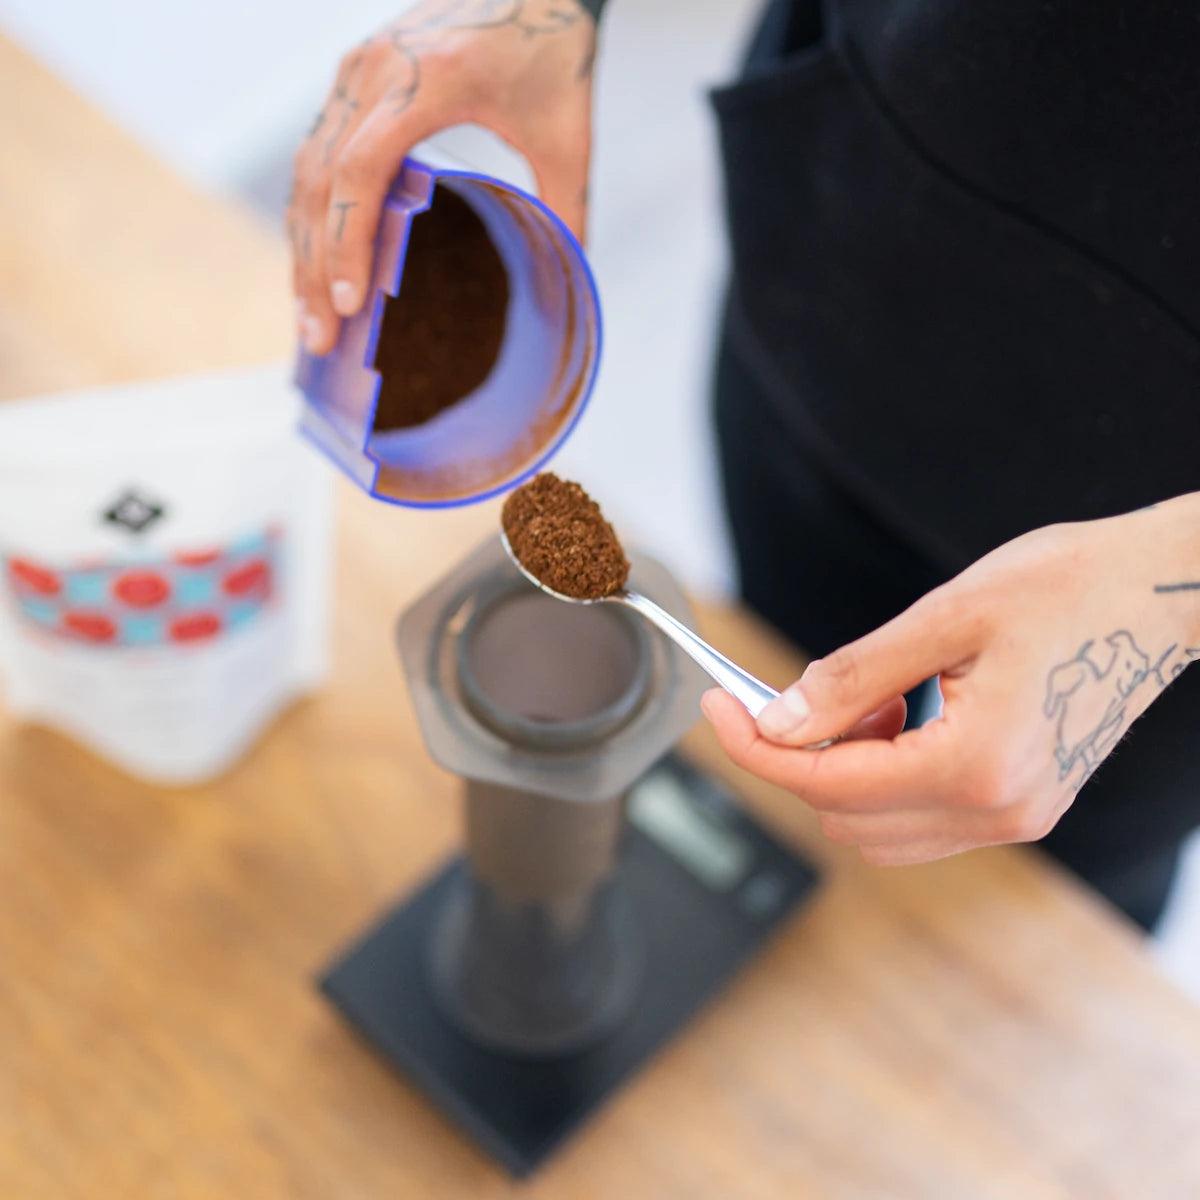 Kaffee mit der Aerobie Aeropress zubereiten - Kaffeemahlgut abwiegen